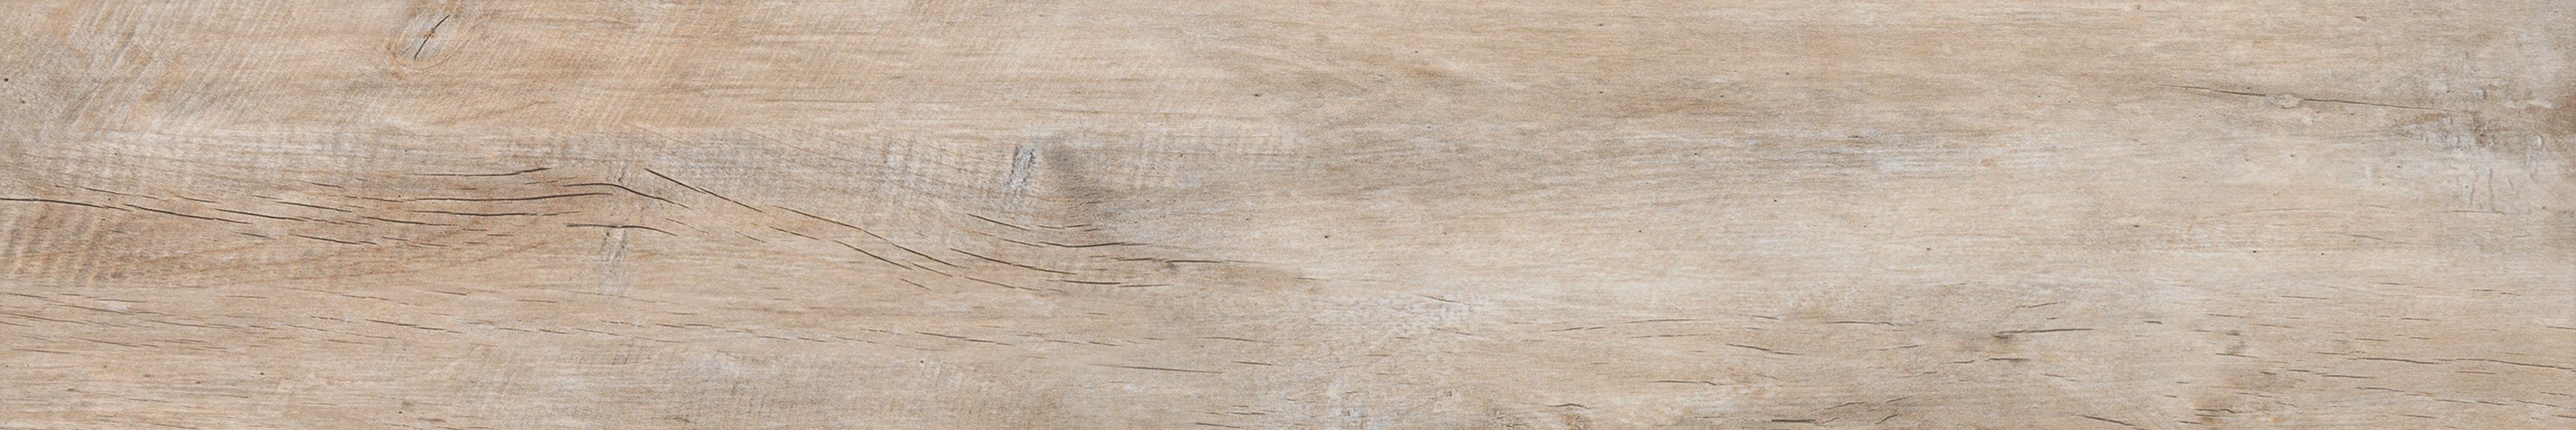 Noem Gres Bergamo Bodenfliese Holzoptik Rost matt 20x121 cm rekt. R9